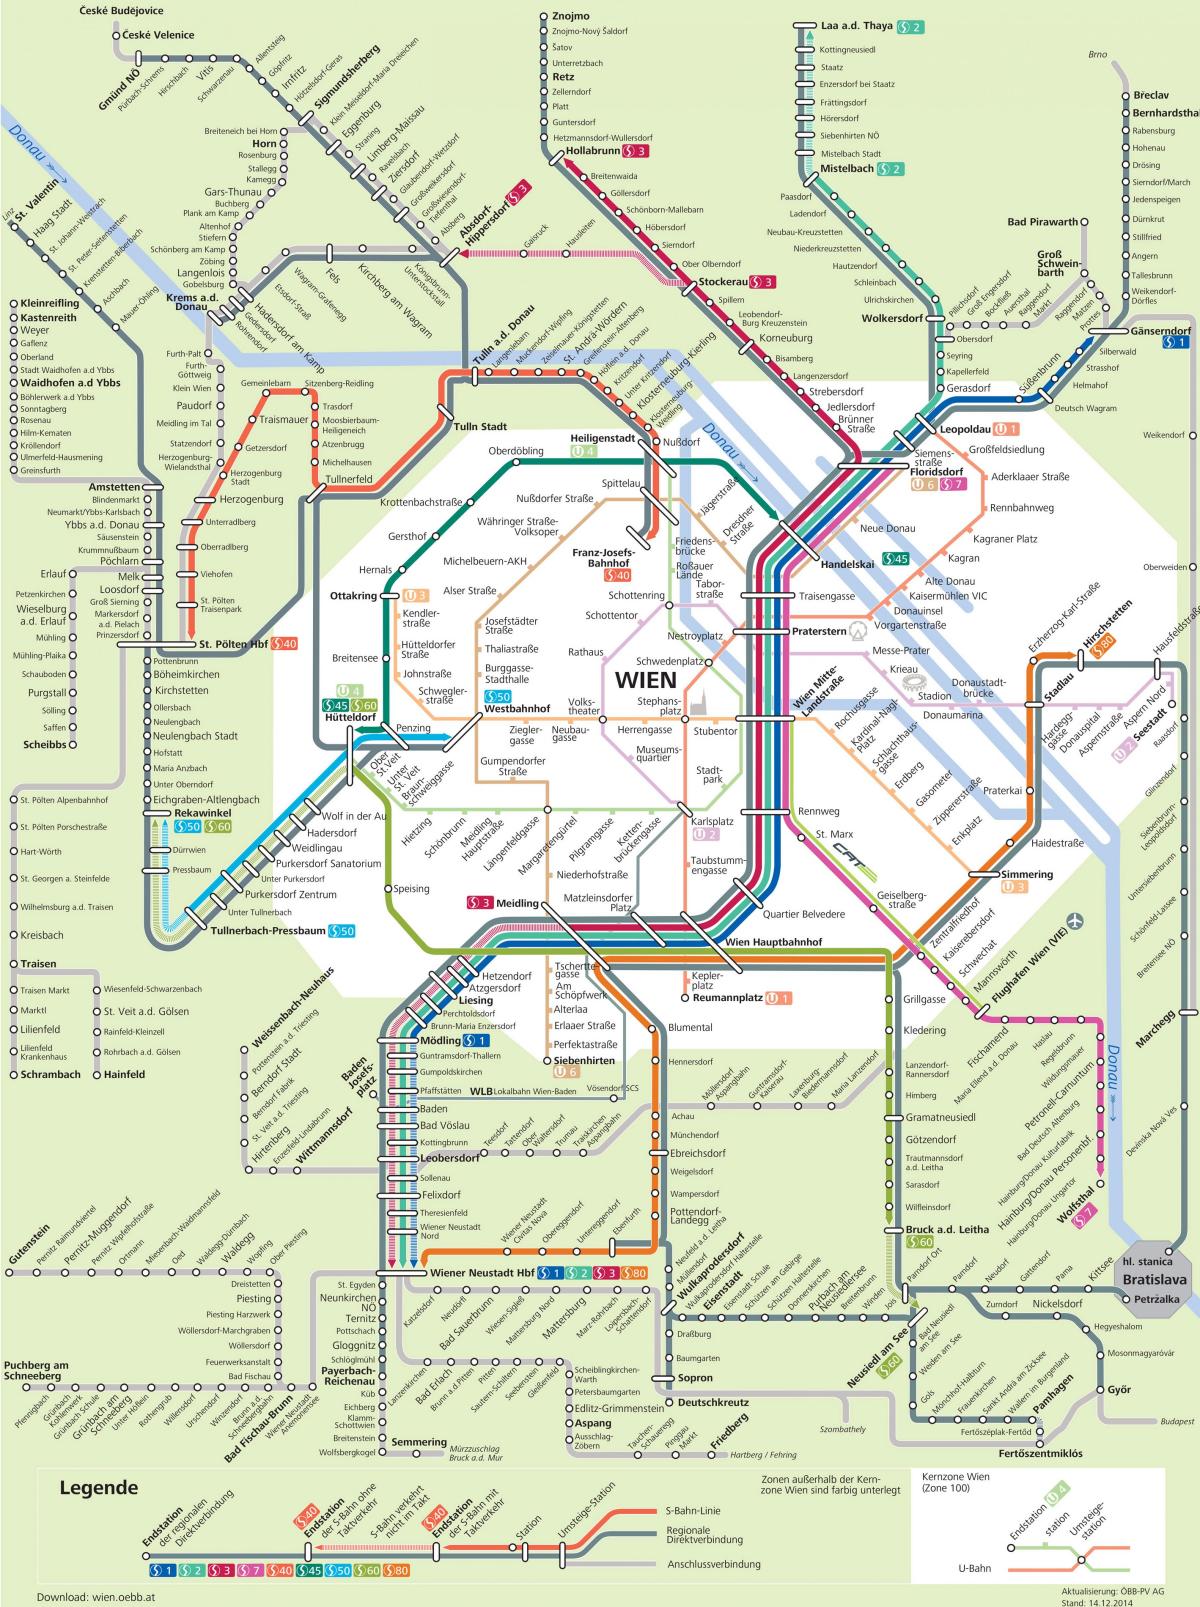 نقشه از وین s7 مسیر